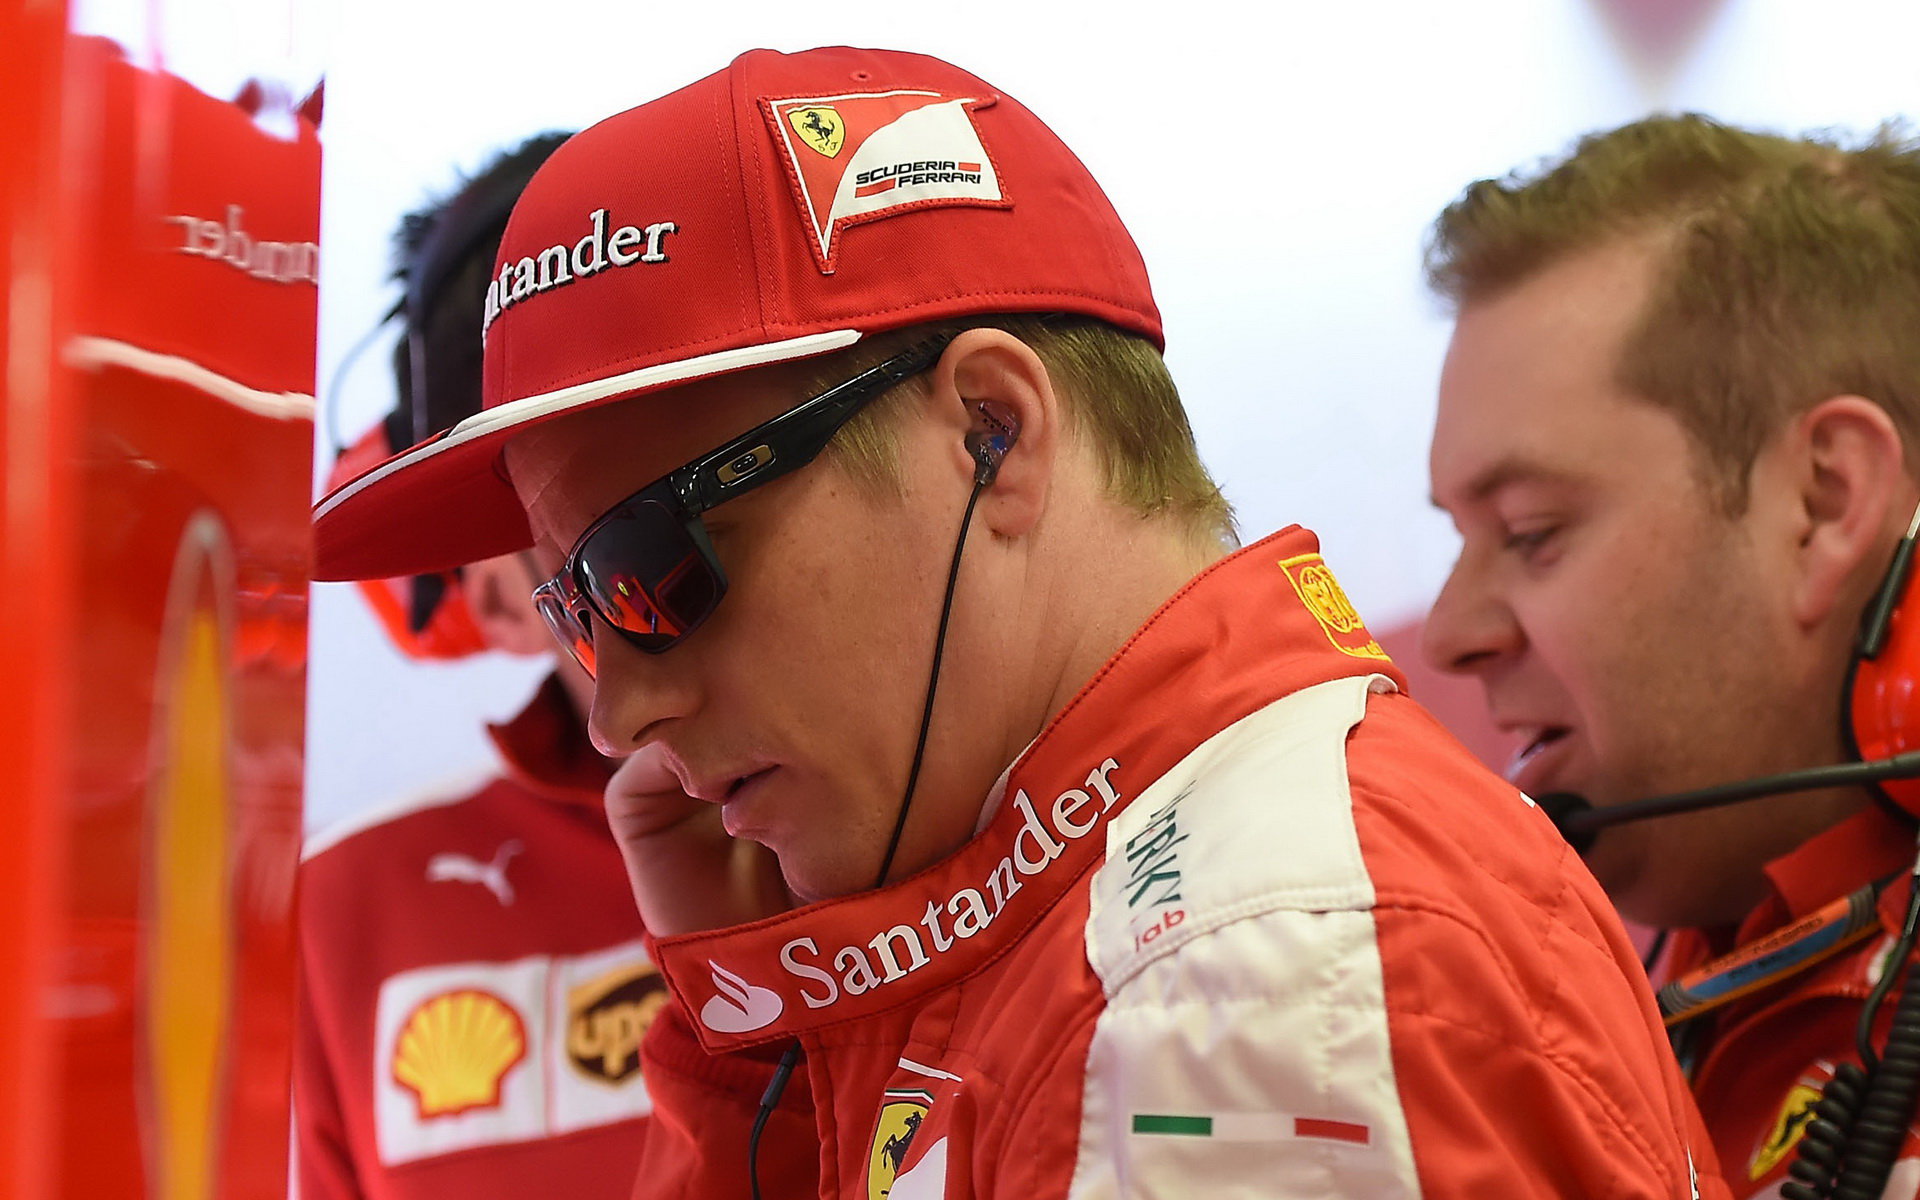 Belgie bude závod jako každý jiný, opakuje Räikkönen